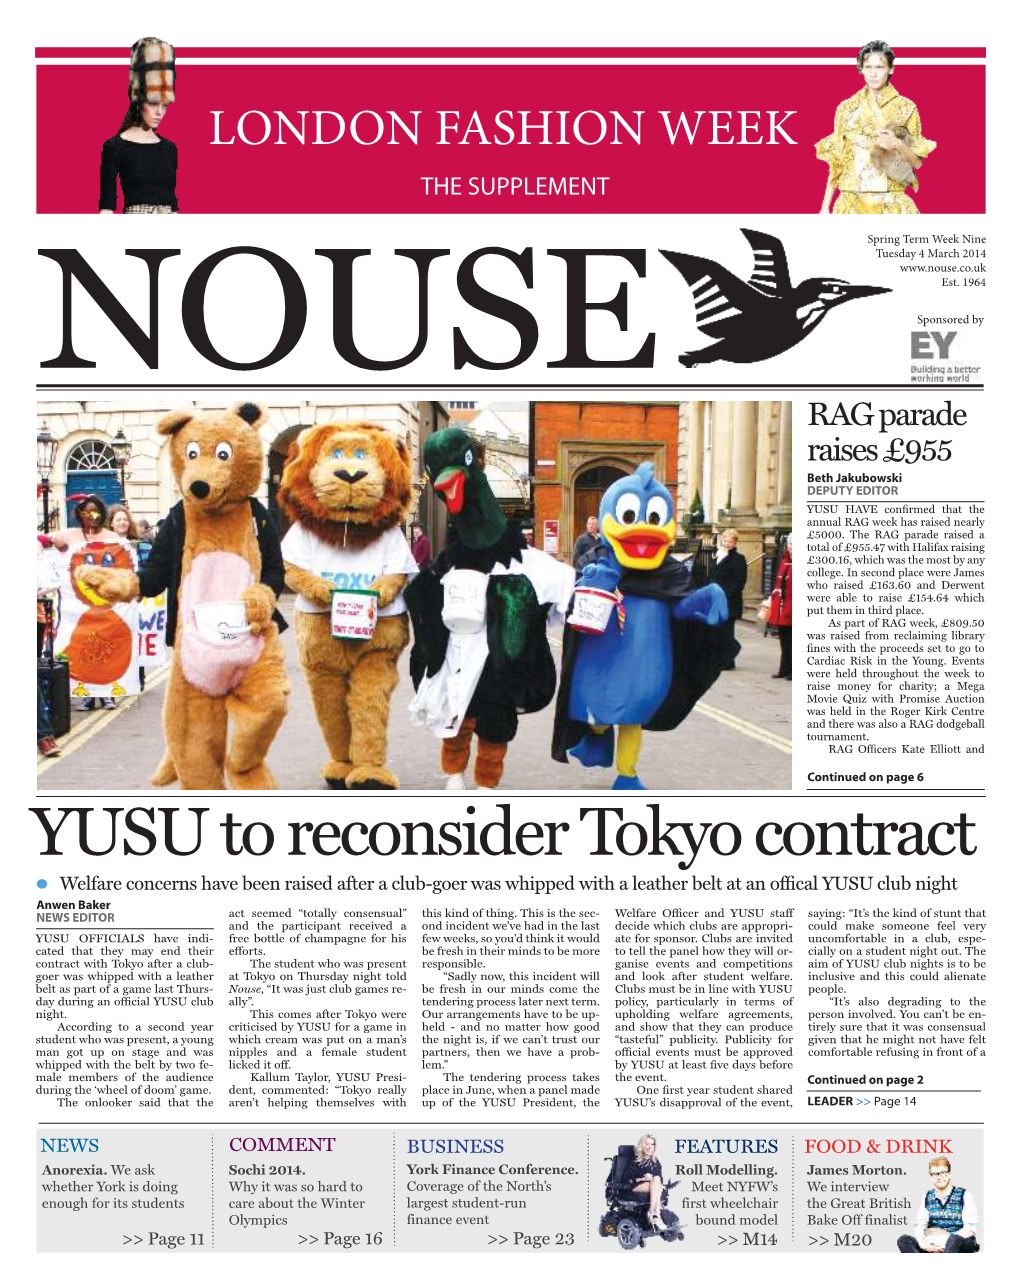 YUSU to Reconsider Tokyo Contract